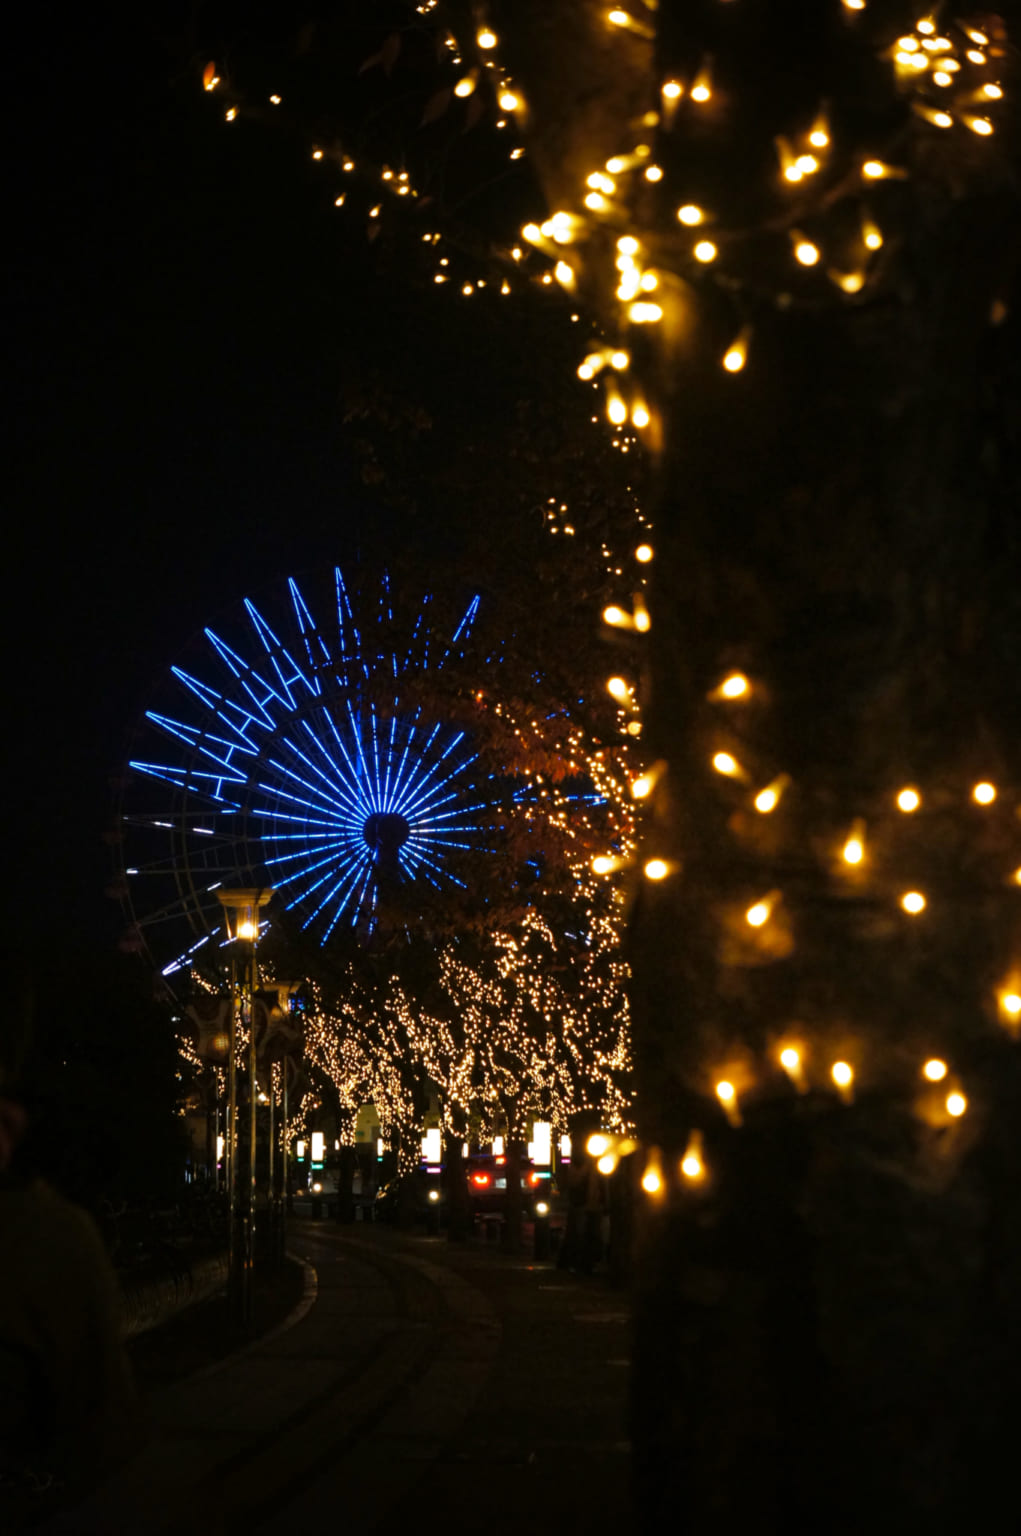 Illuminations and ferris wheel on Gaslight Street in Kobe